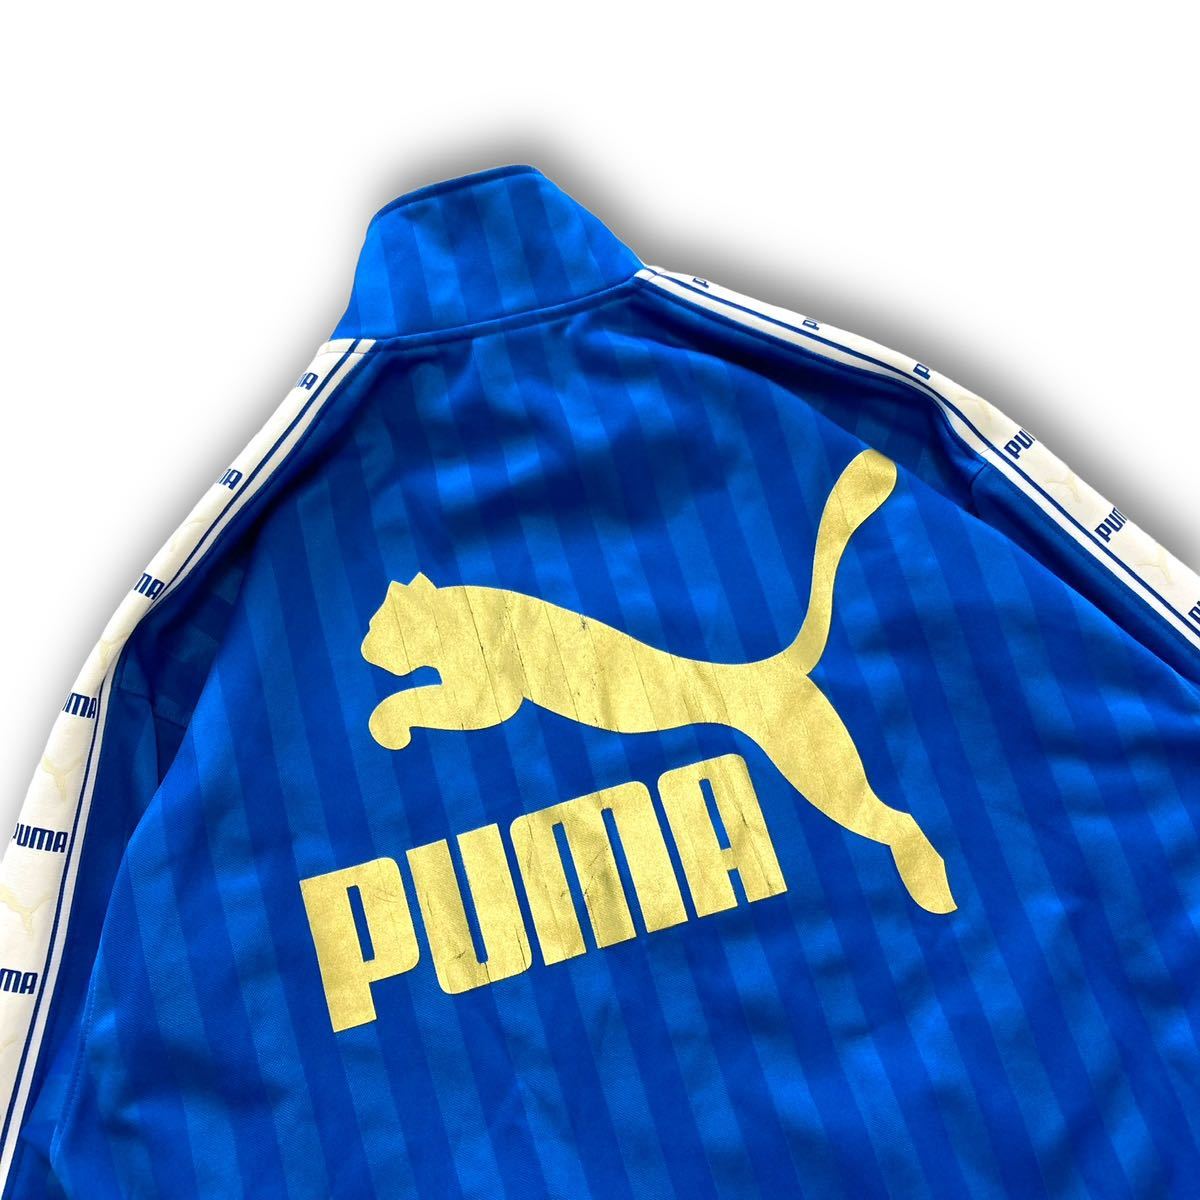 【PUMA】90s プーマ ヒットユニオン ジャージ トラックジャケット 古着 金青 らくらく90年代 ヴィンテージ ビッグロゴ 刺繍ロゴ 袖ライン